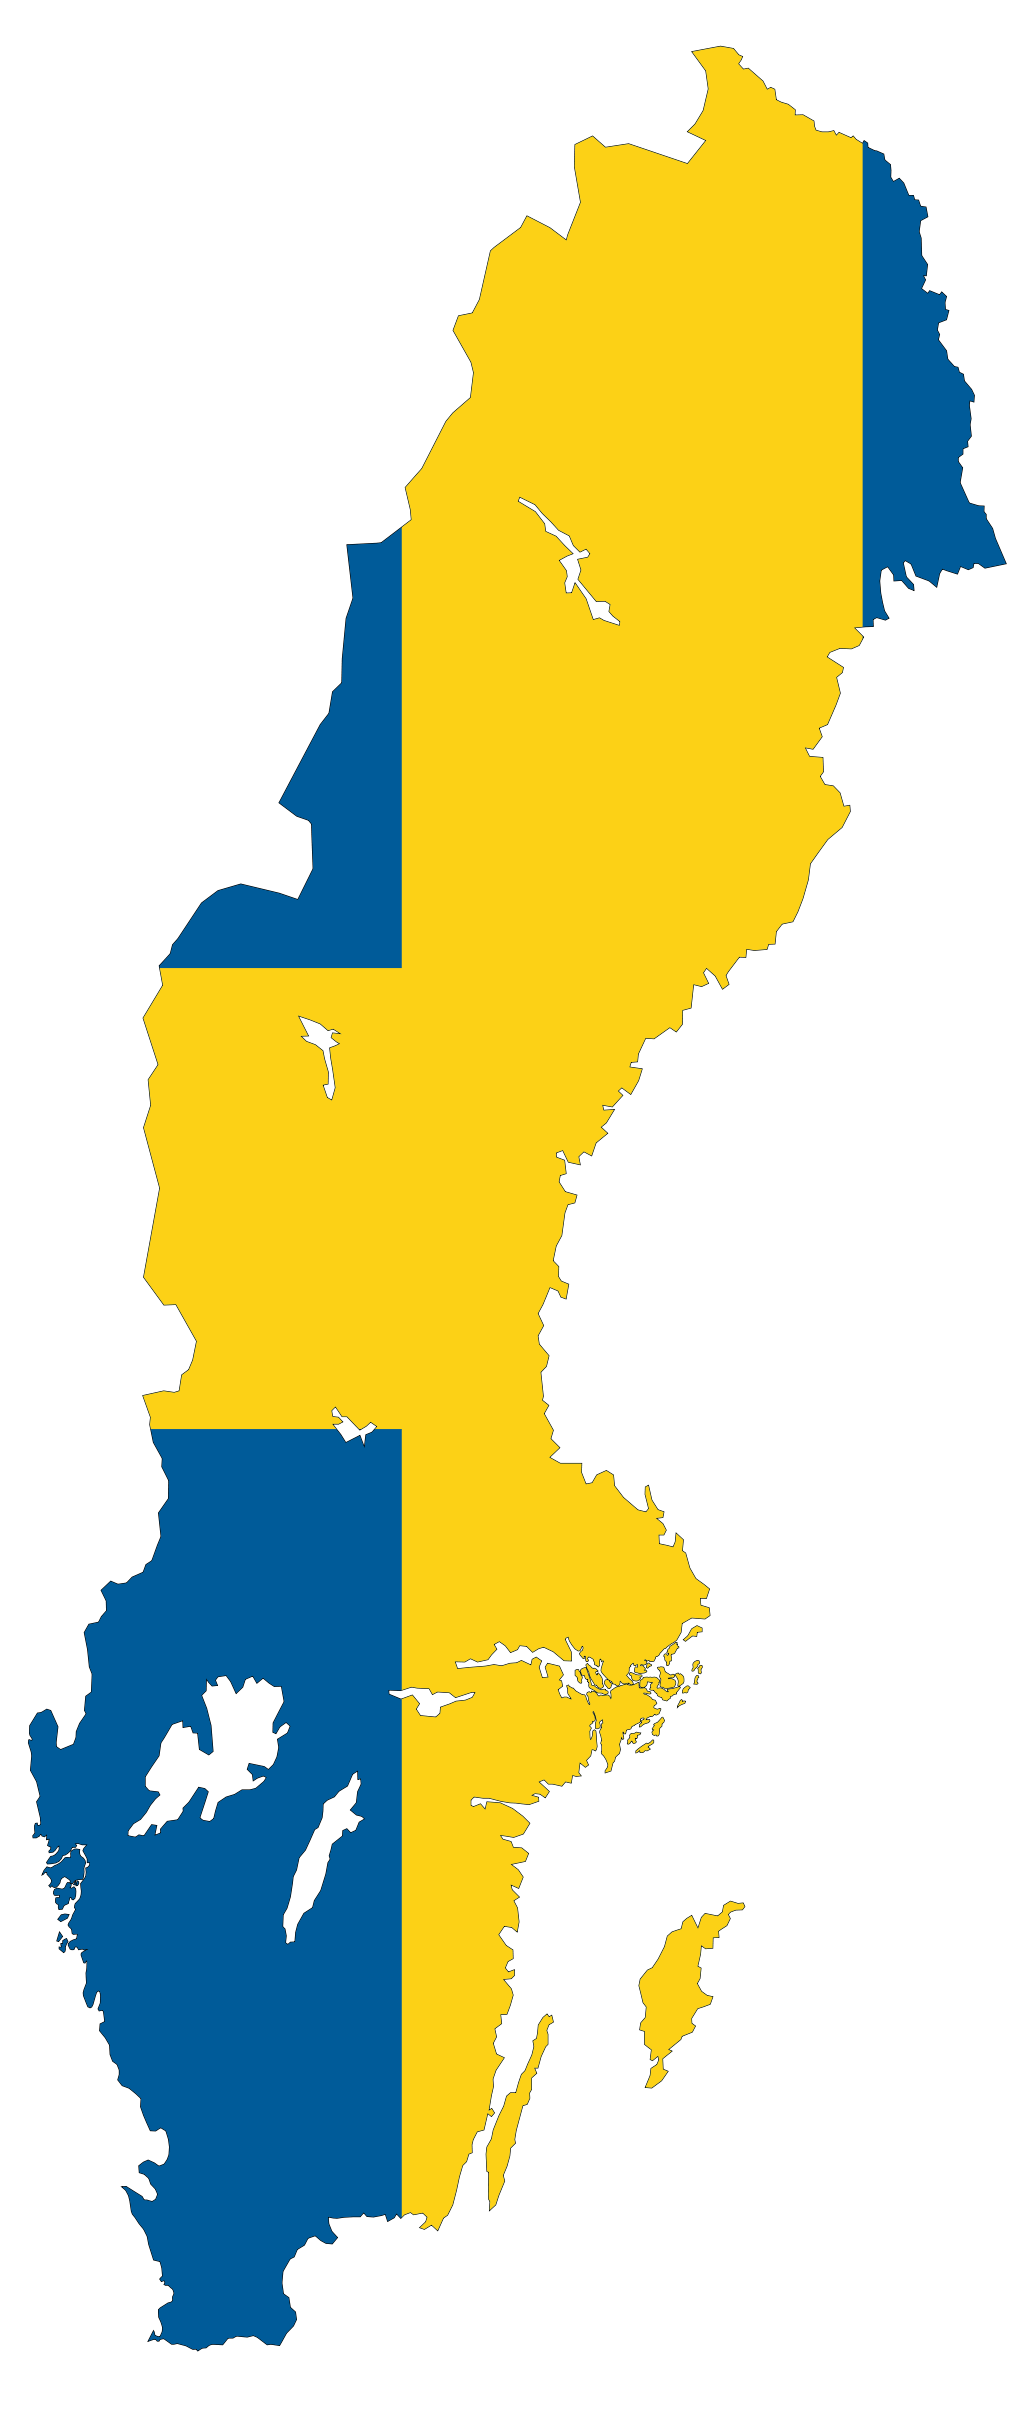 Sweden flag map. Flag Maps. Sweden map, Sweden flag